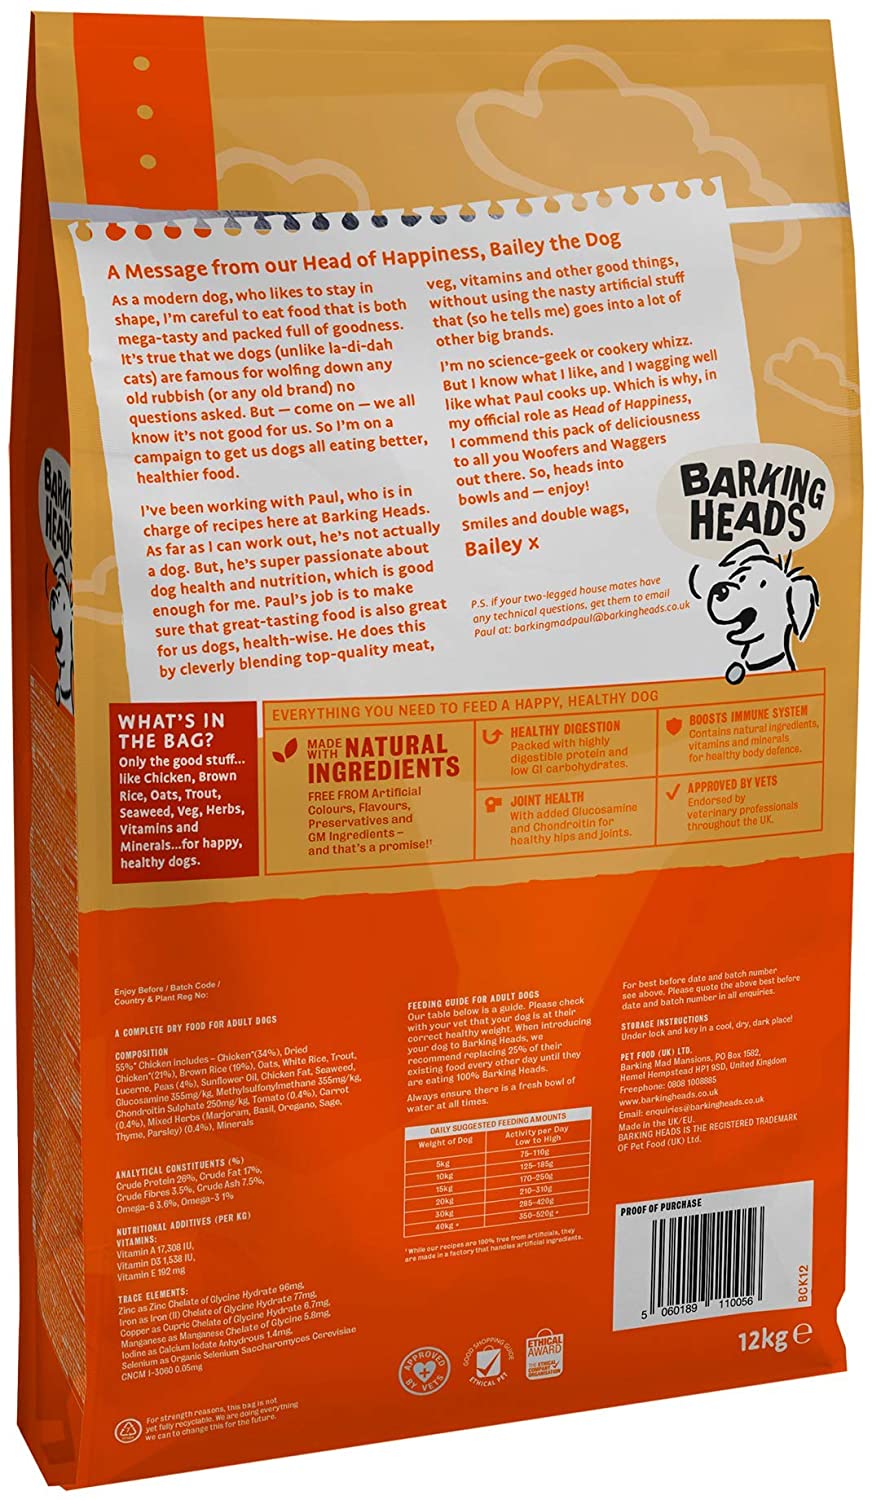  Barking Heads Comida Seca para Perros - Bowl Lickin' Chicken - Pollo 100% natural sin aromas artificiales, Ayuda a mejorar la digestión y la salud de las articulaciones, 12 kg 